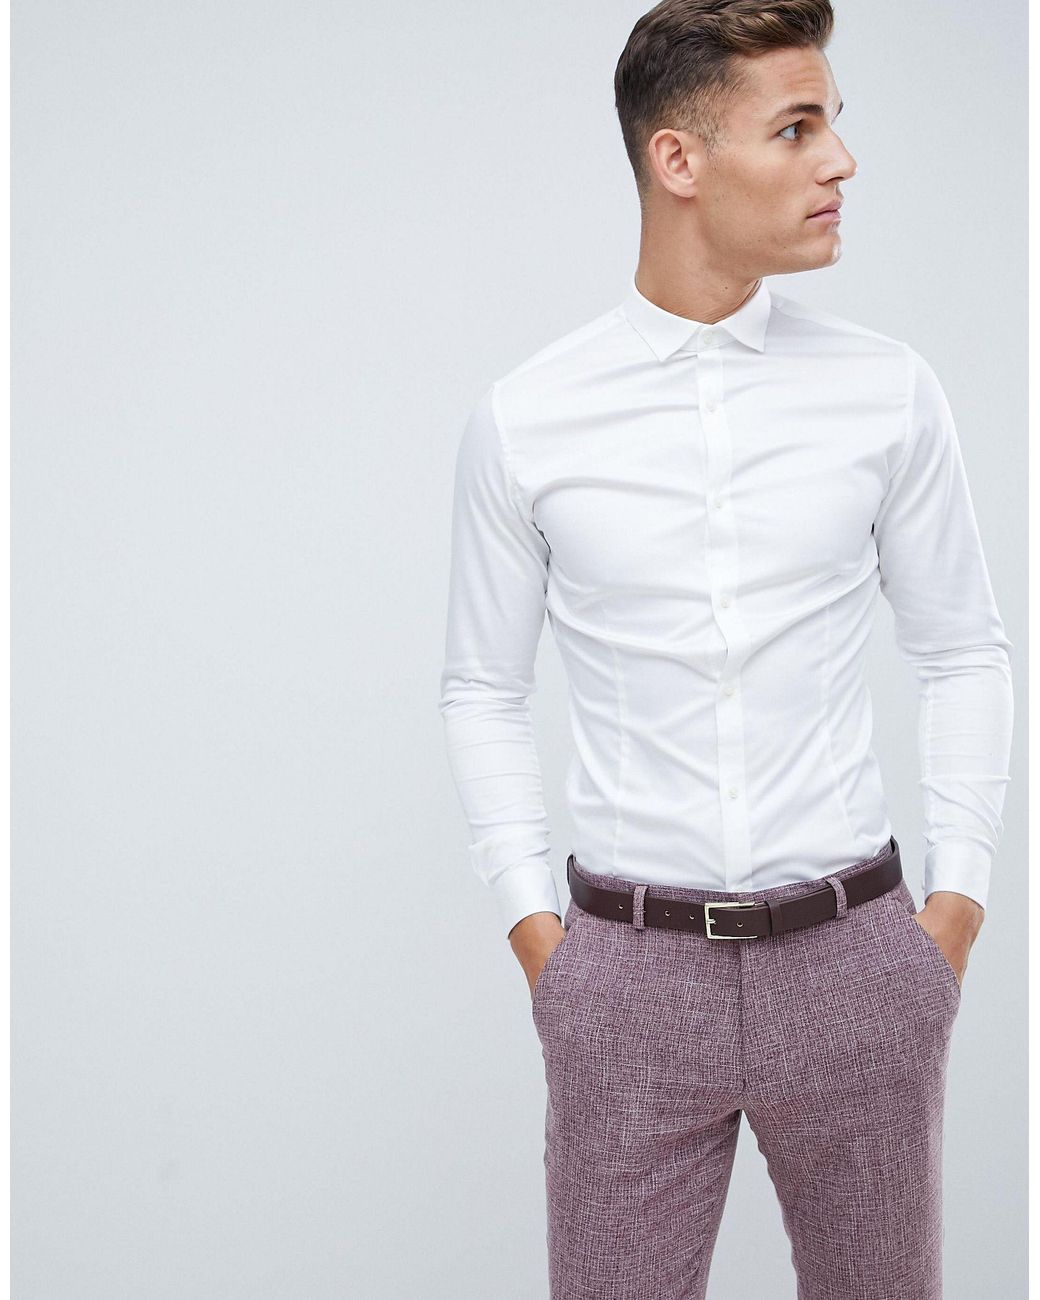 HERREN Hemden & T-Shirts Elegant Weiß S Rabatt 57 % Jack & Jones Hemd 